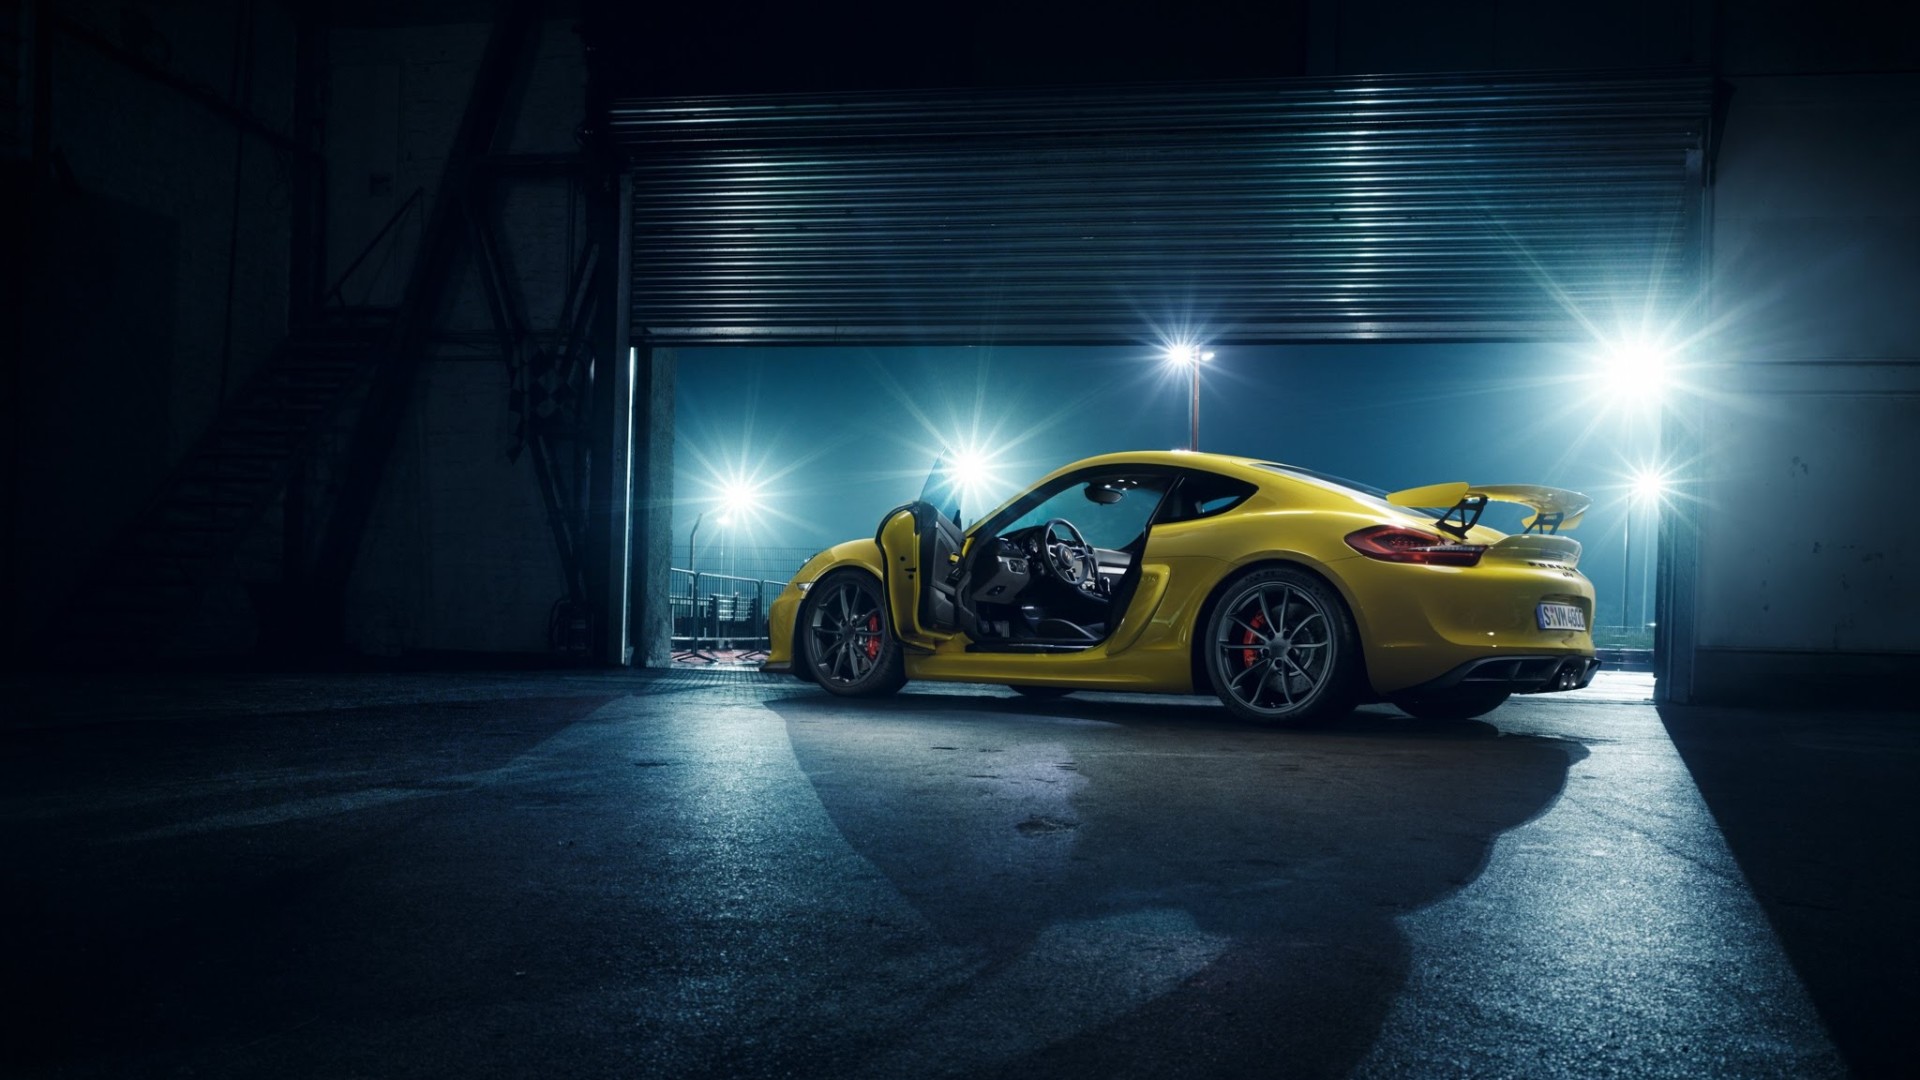 Porsche Cayman Gt4 HD Wallpaper Background Image